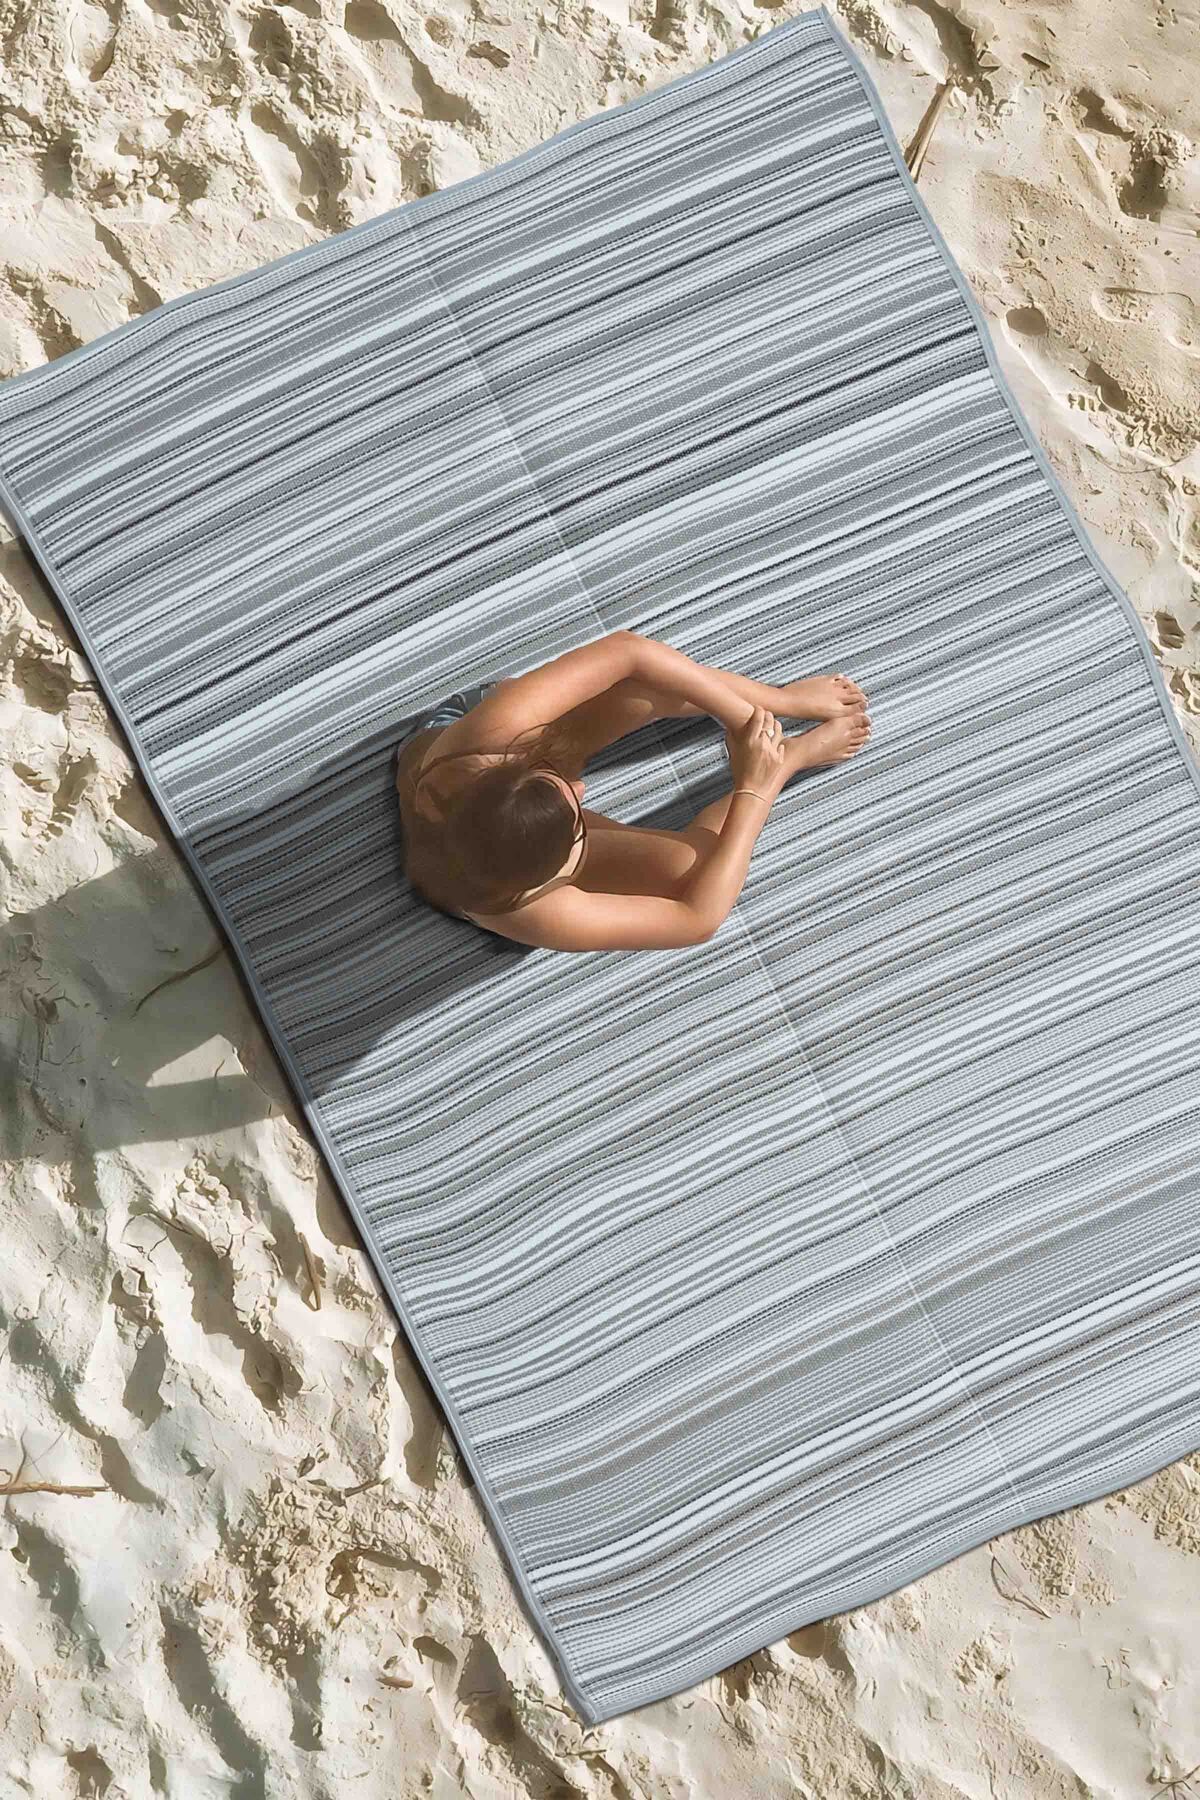 Caretta Home Katlanabilir Plaj Kamp Piknik Bahçe Halısı Balkon Teras Hasır Halı Mat Savan Kilim Karavan Halısı